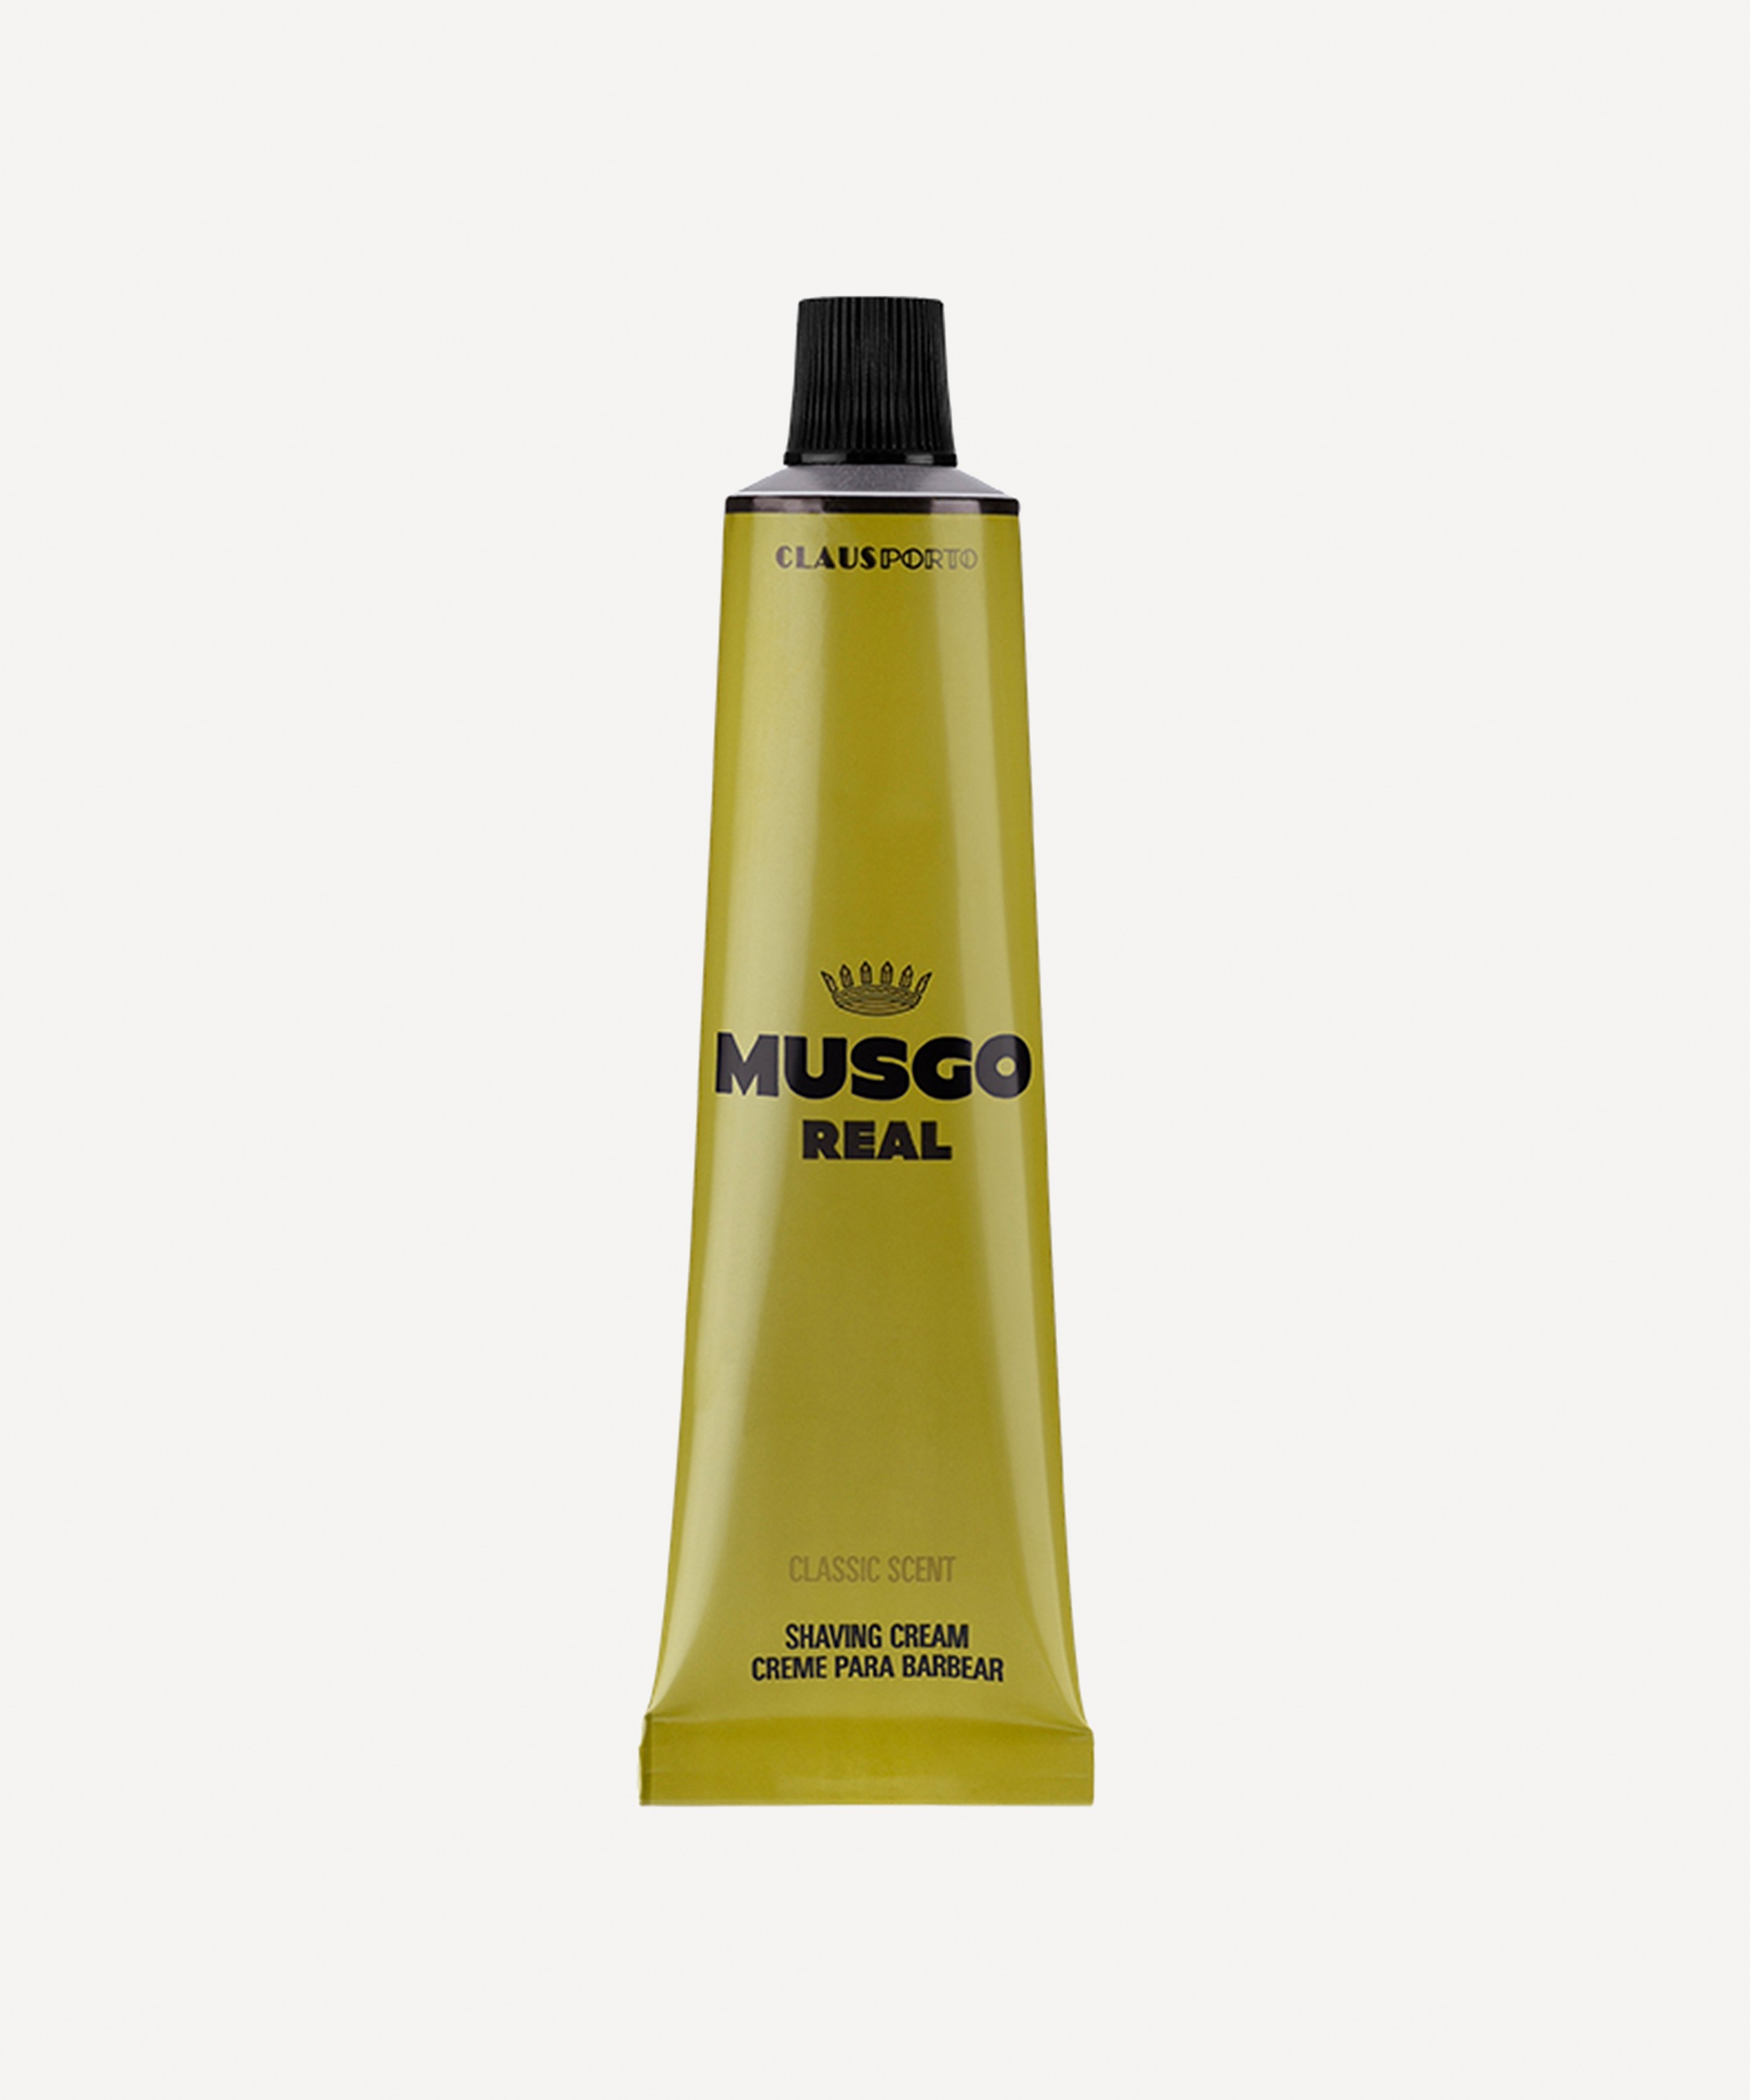 Claus Porto - Musgo Real Classic Scent Shaving Cream 100ml